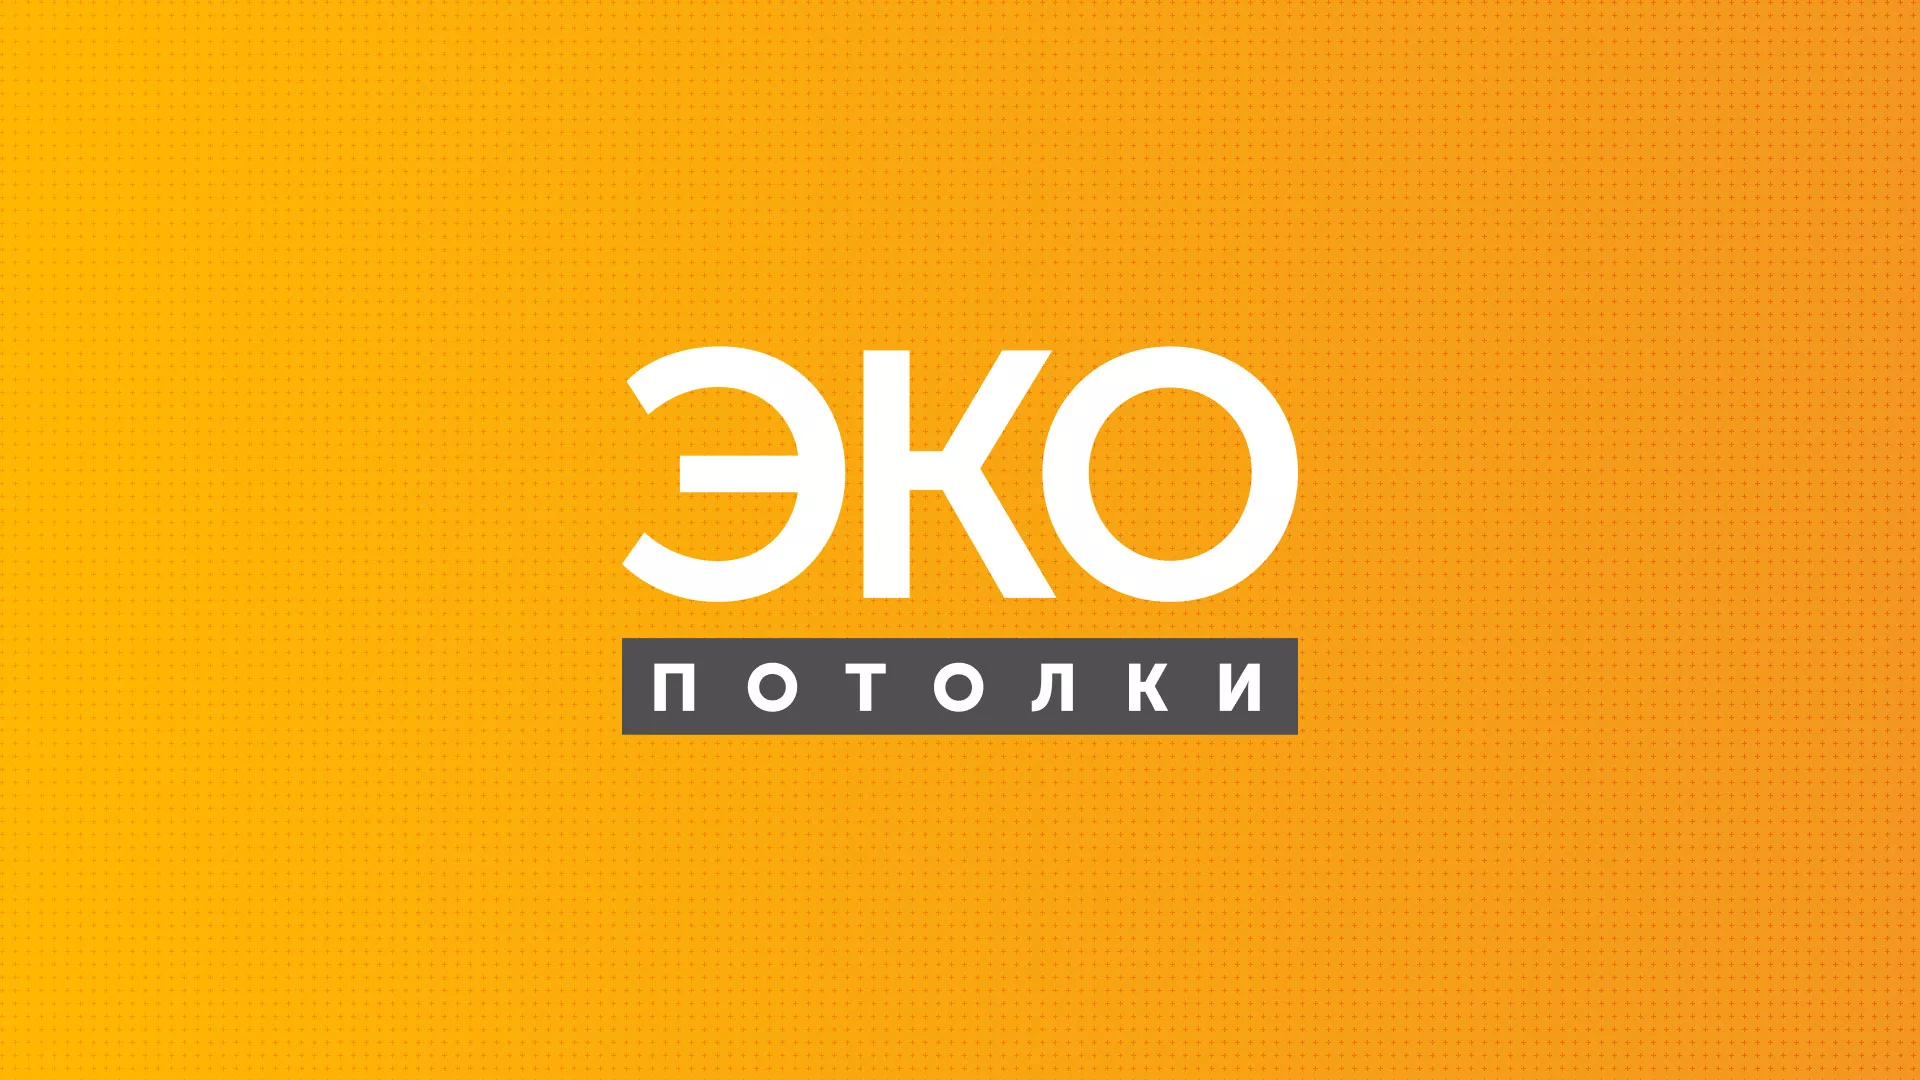 Разработка сайта по натяжным потолкам «Эко Потолки» в Ижевске